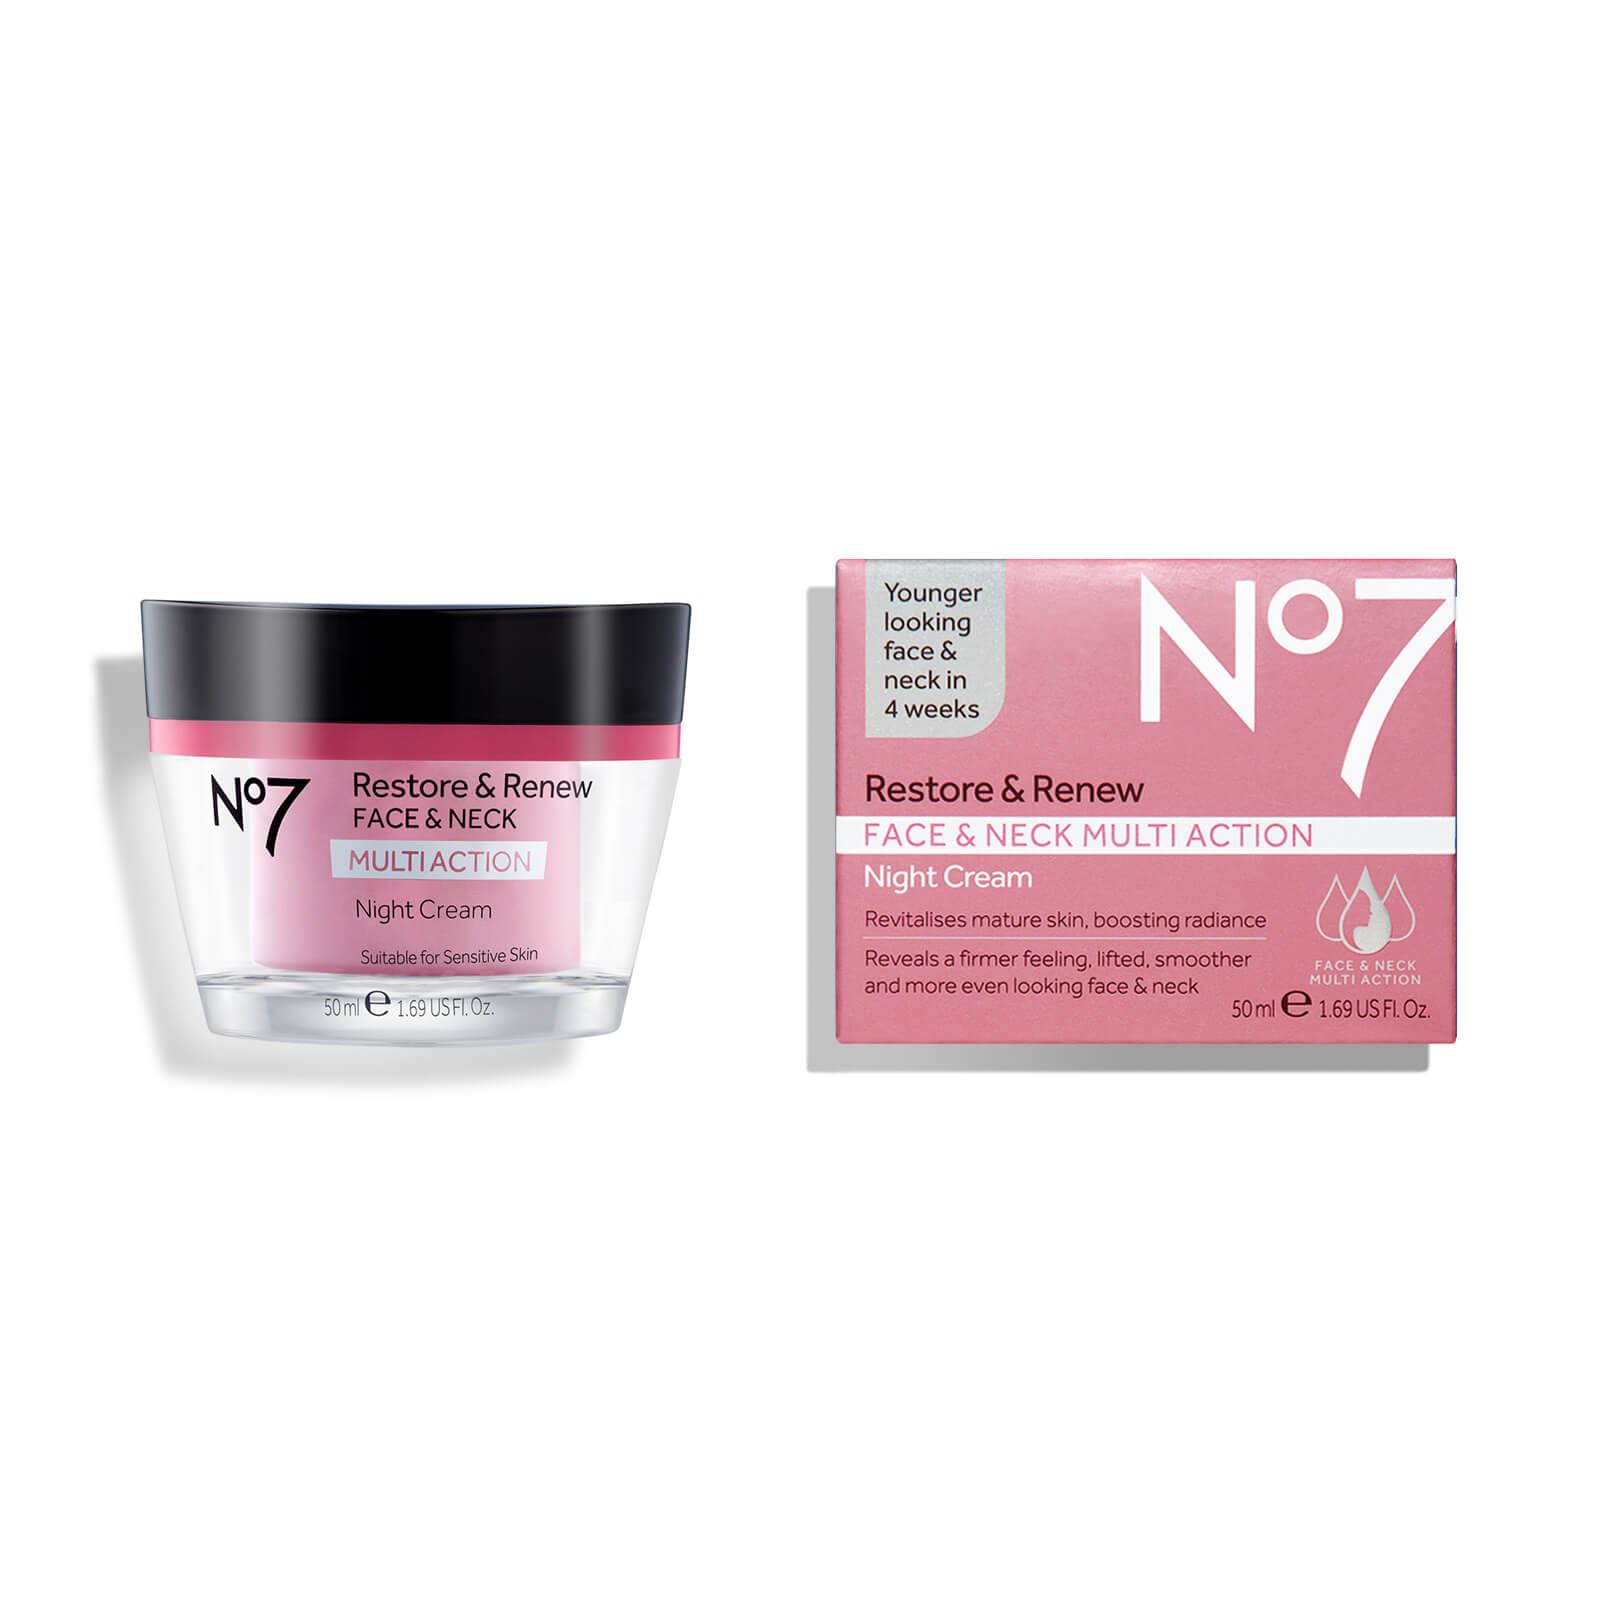 No7 Restore & Renew Multi Action Face & Neck Night Cream 50ml | No7 US